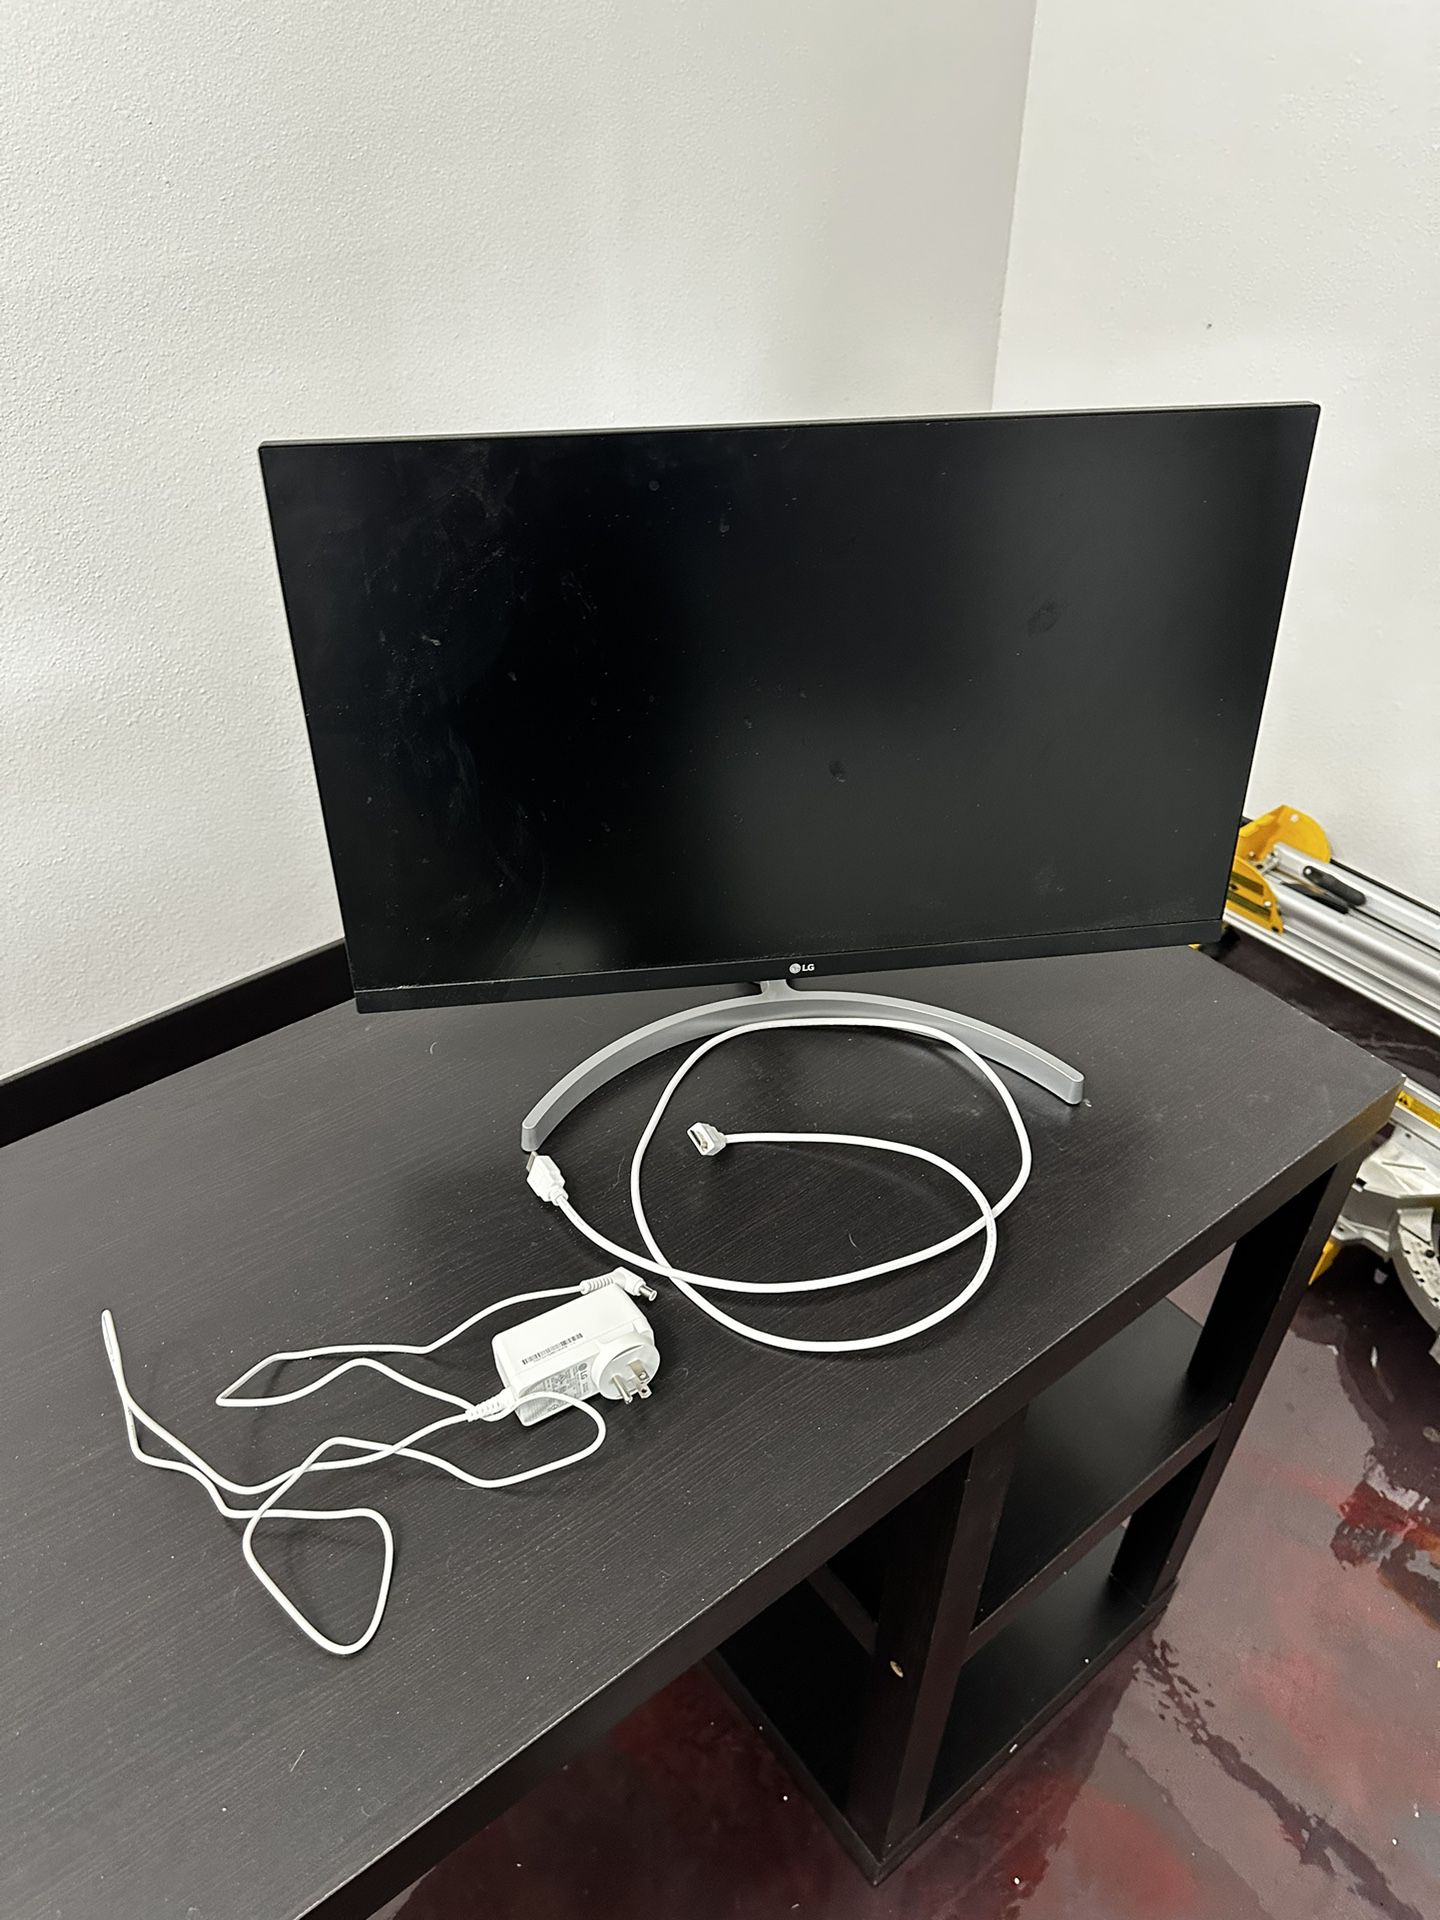 27” LG Computer monitor